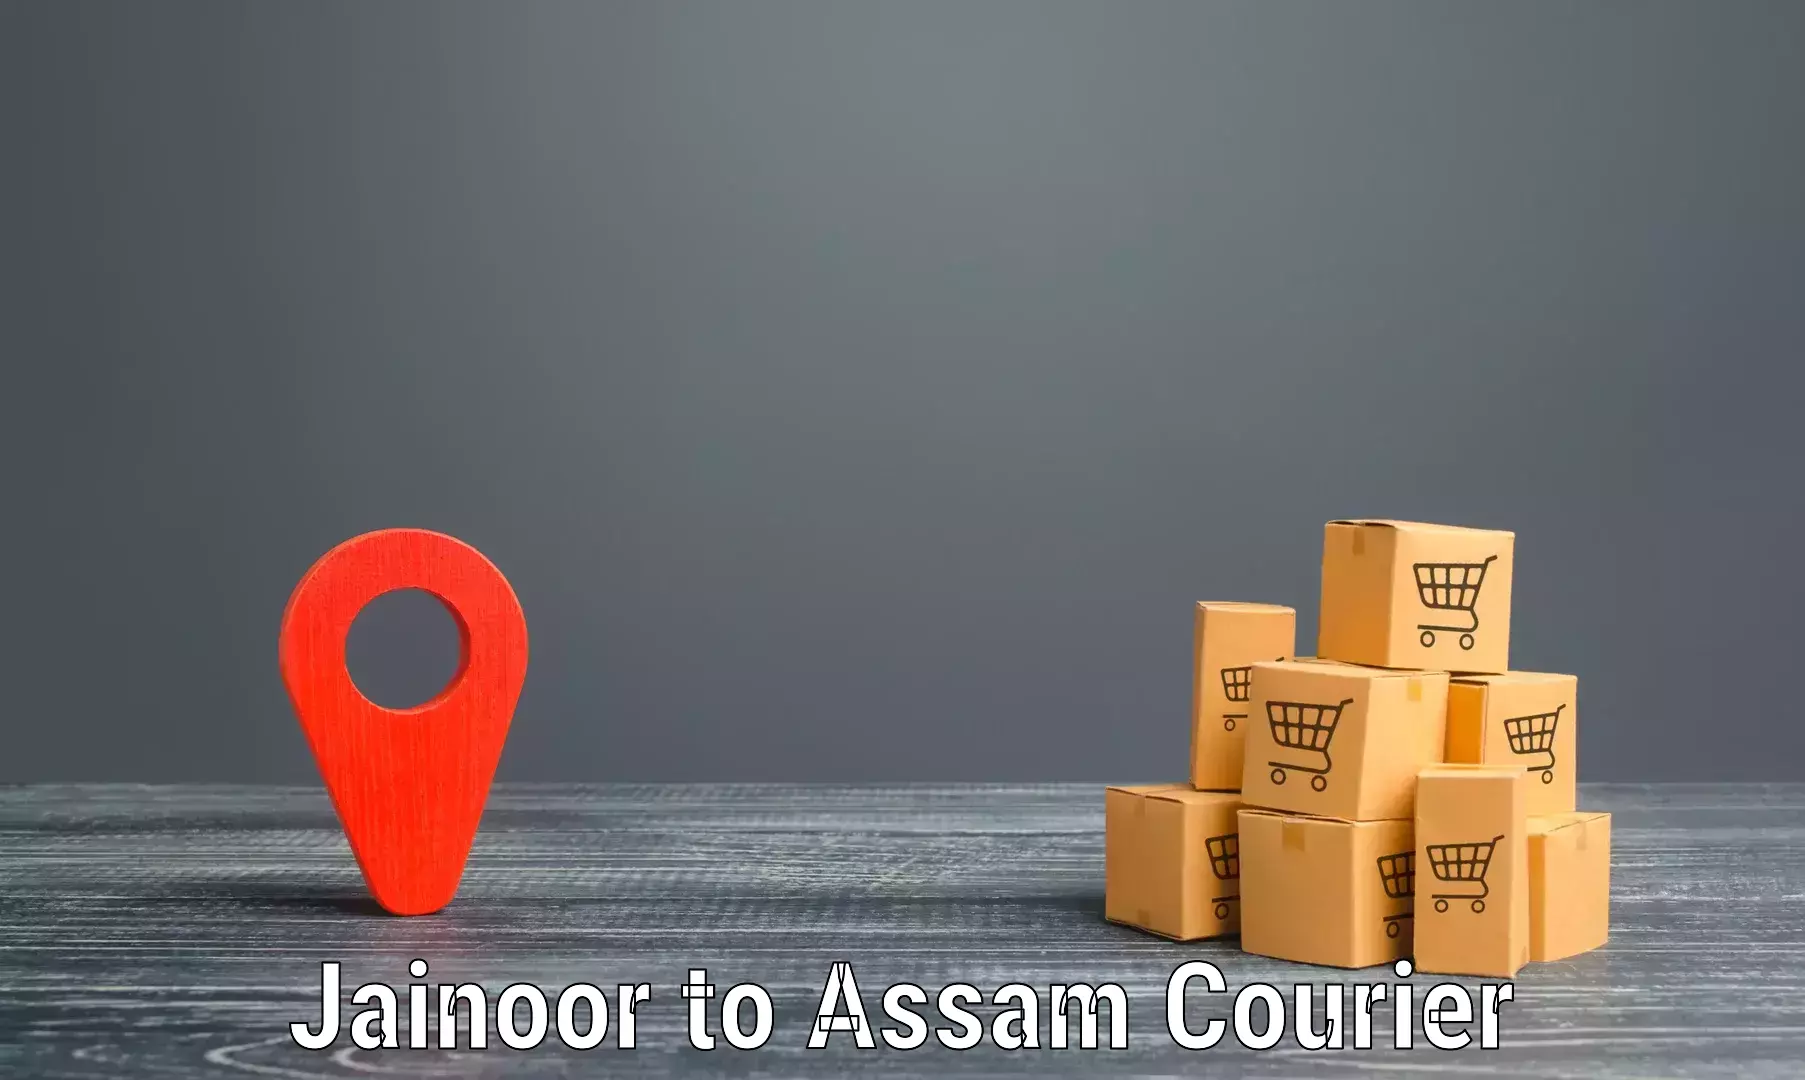 Efficient courier operations Jainoor to Kalain